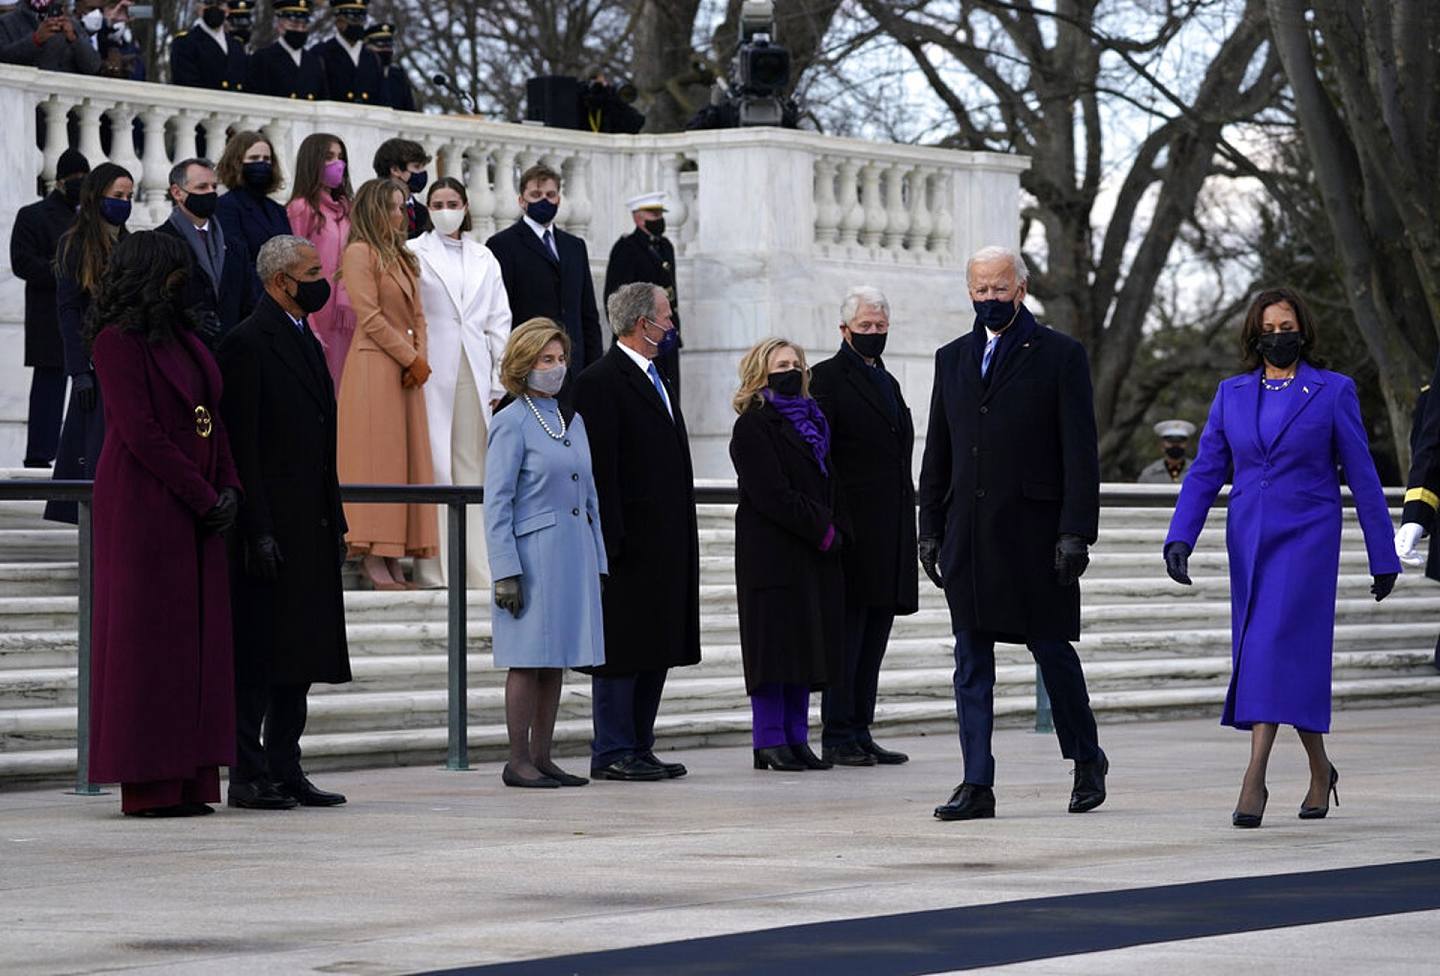 出席典礼的副总统贺锦丽（Kamala Harris）与两名前第一夫人米歇尔（Michelle Obama）和希拉莉（Hillary Clinton），三人不约而同穿上紫色系服装。 (AP)